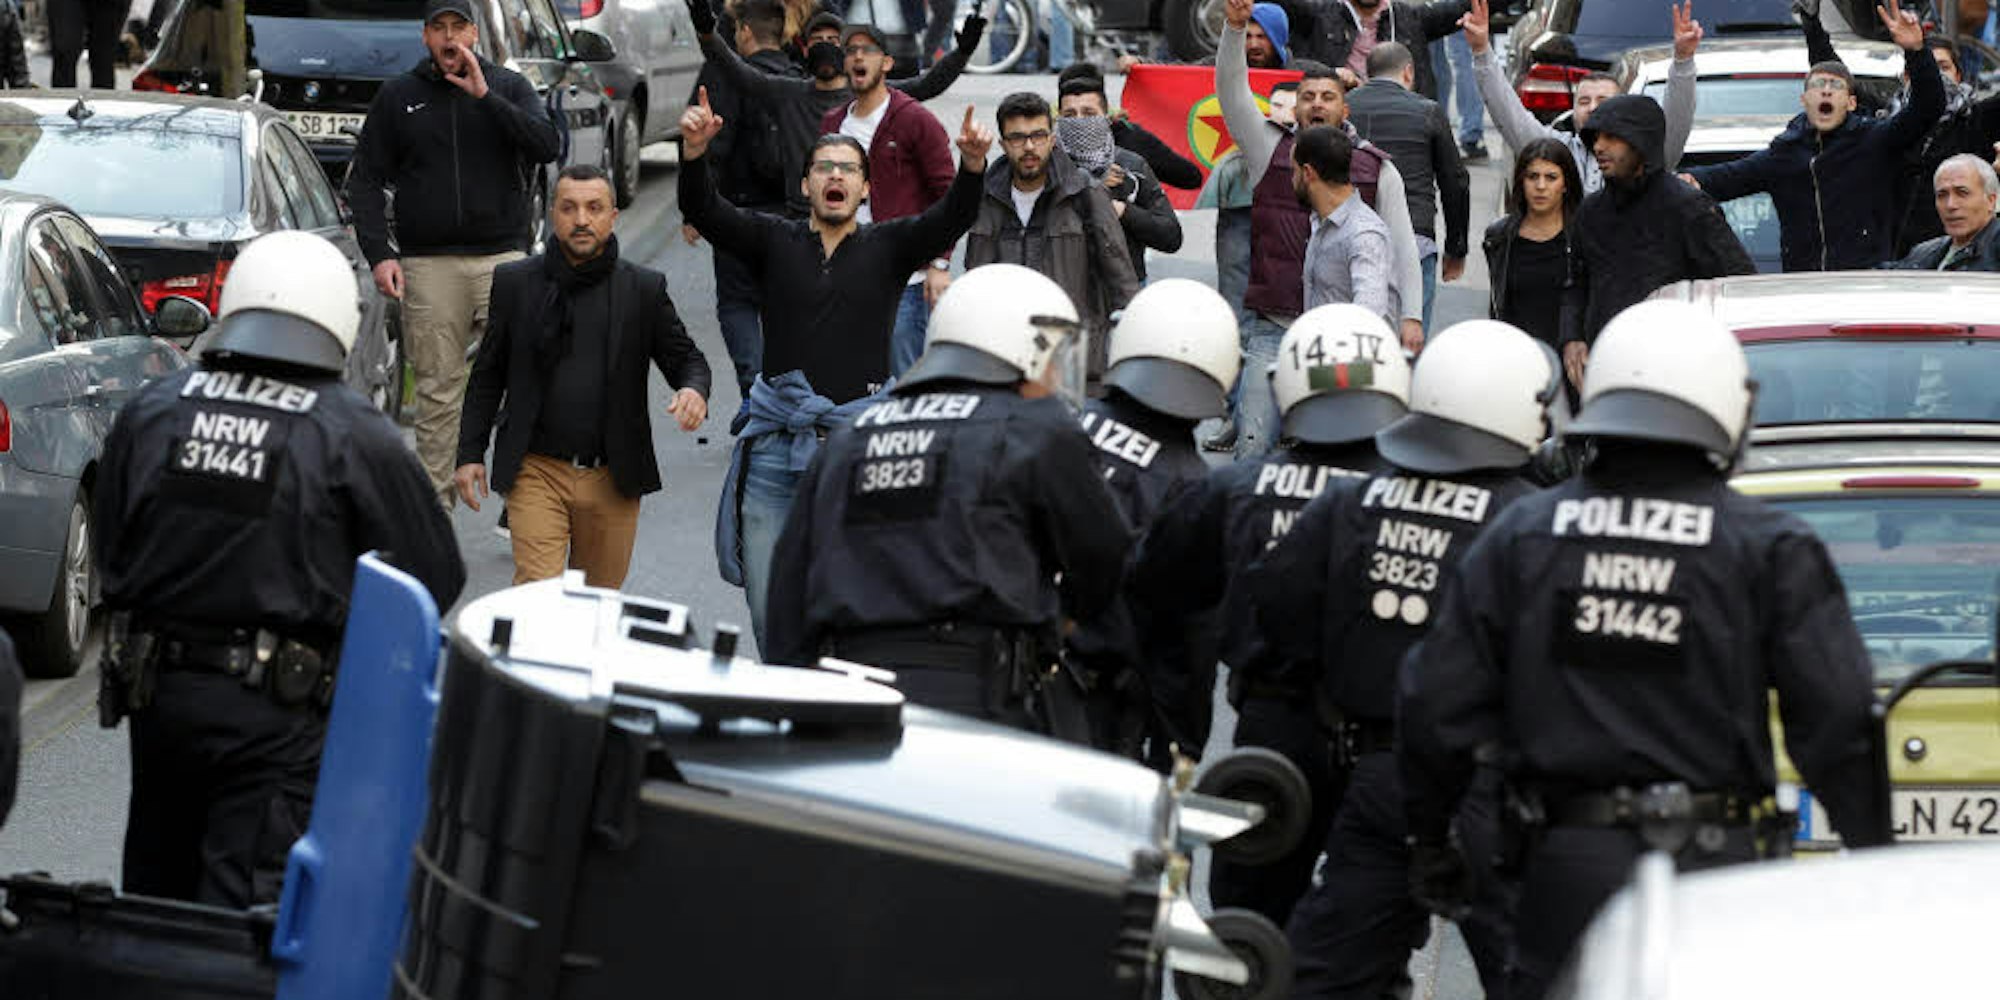 66 Strafanzeigen gab es nach den Demonstrationen am 10. April